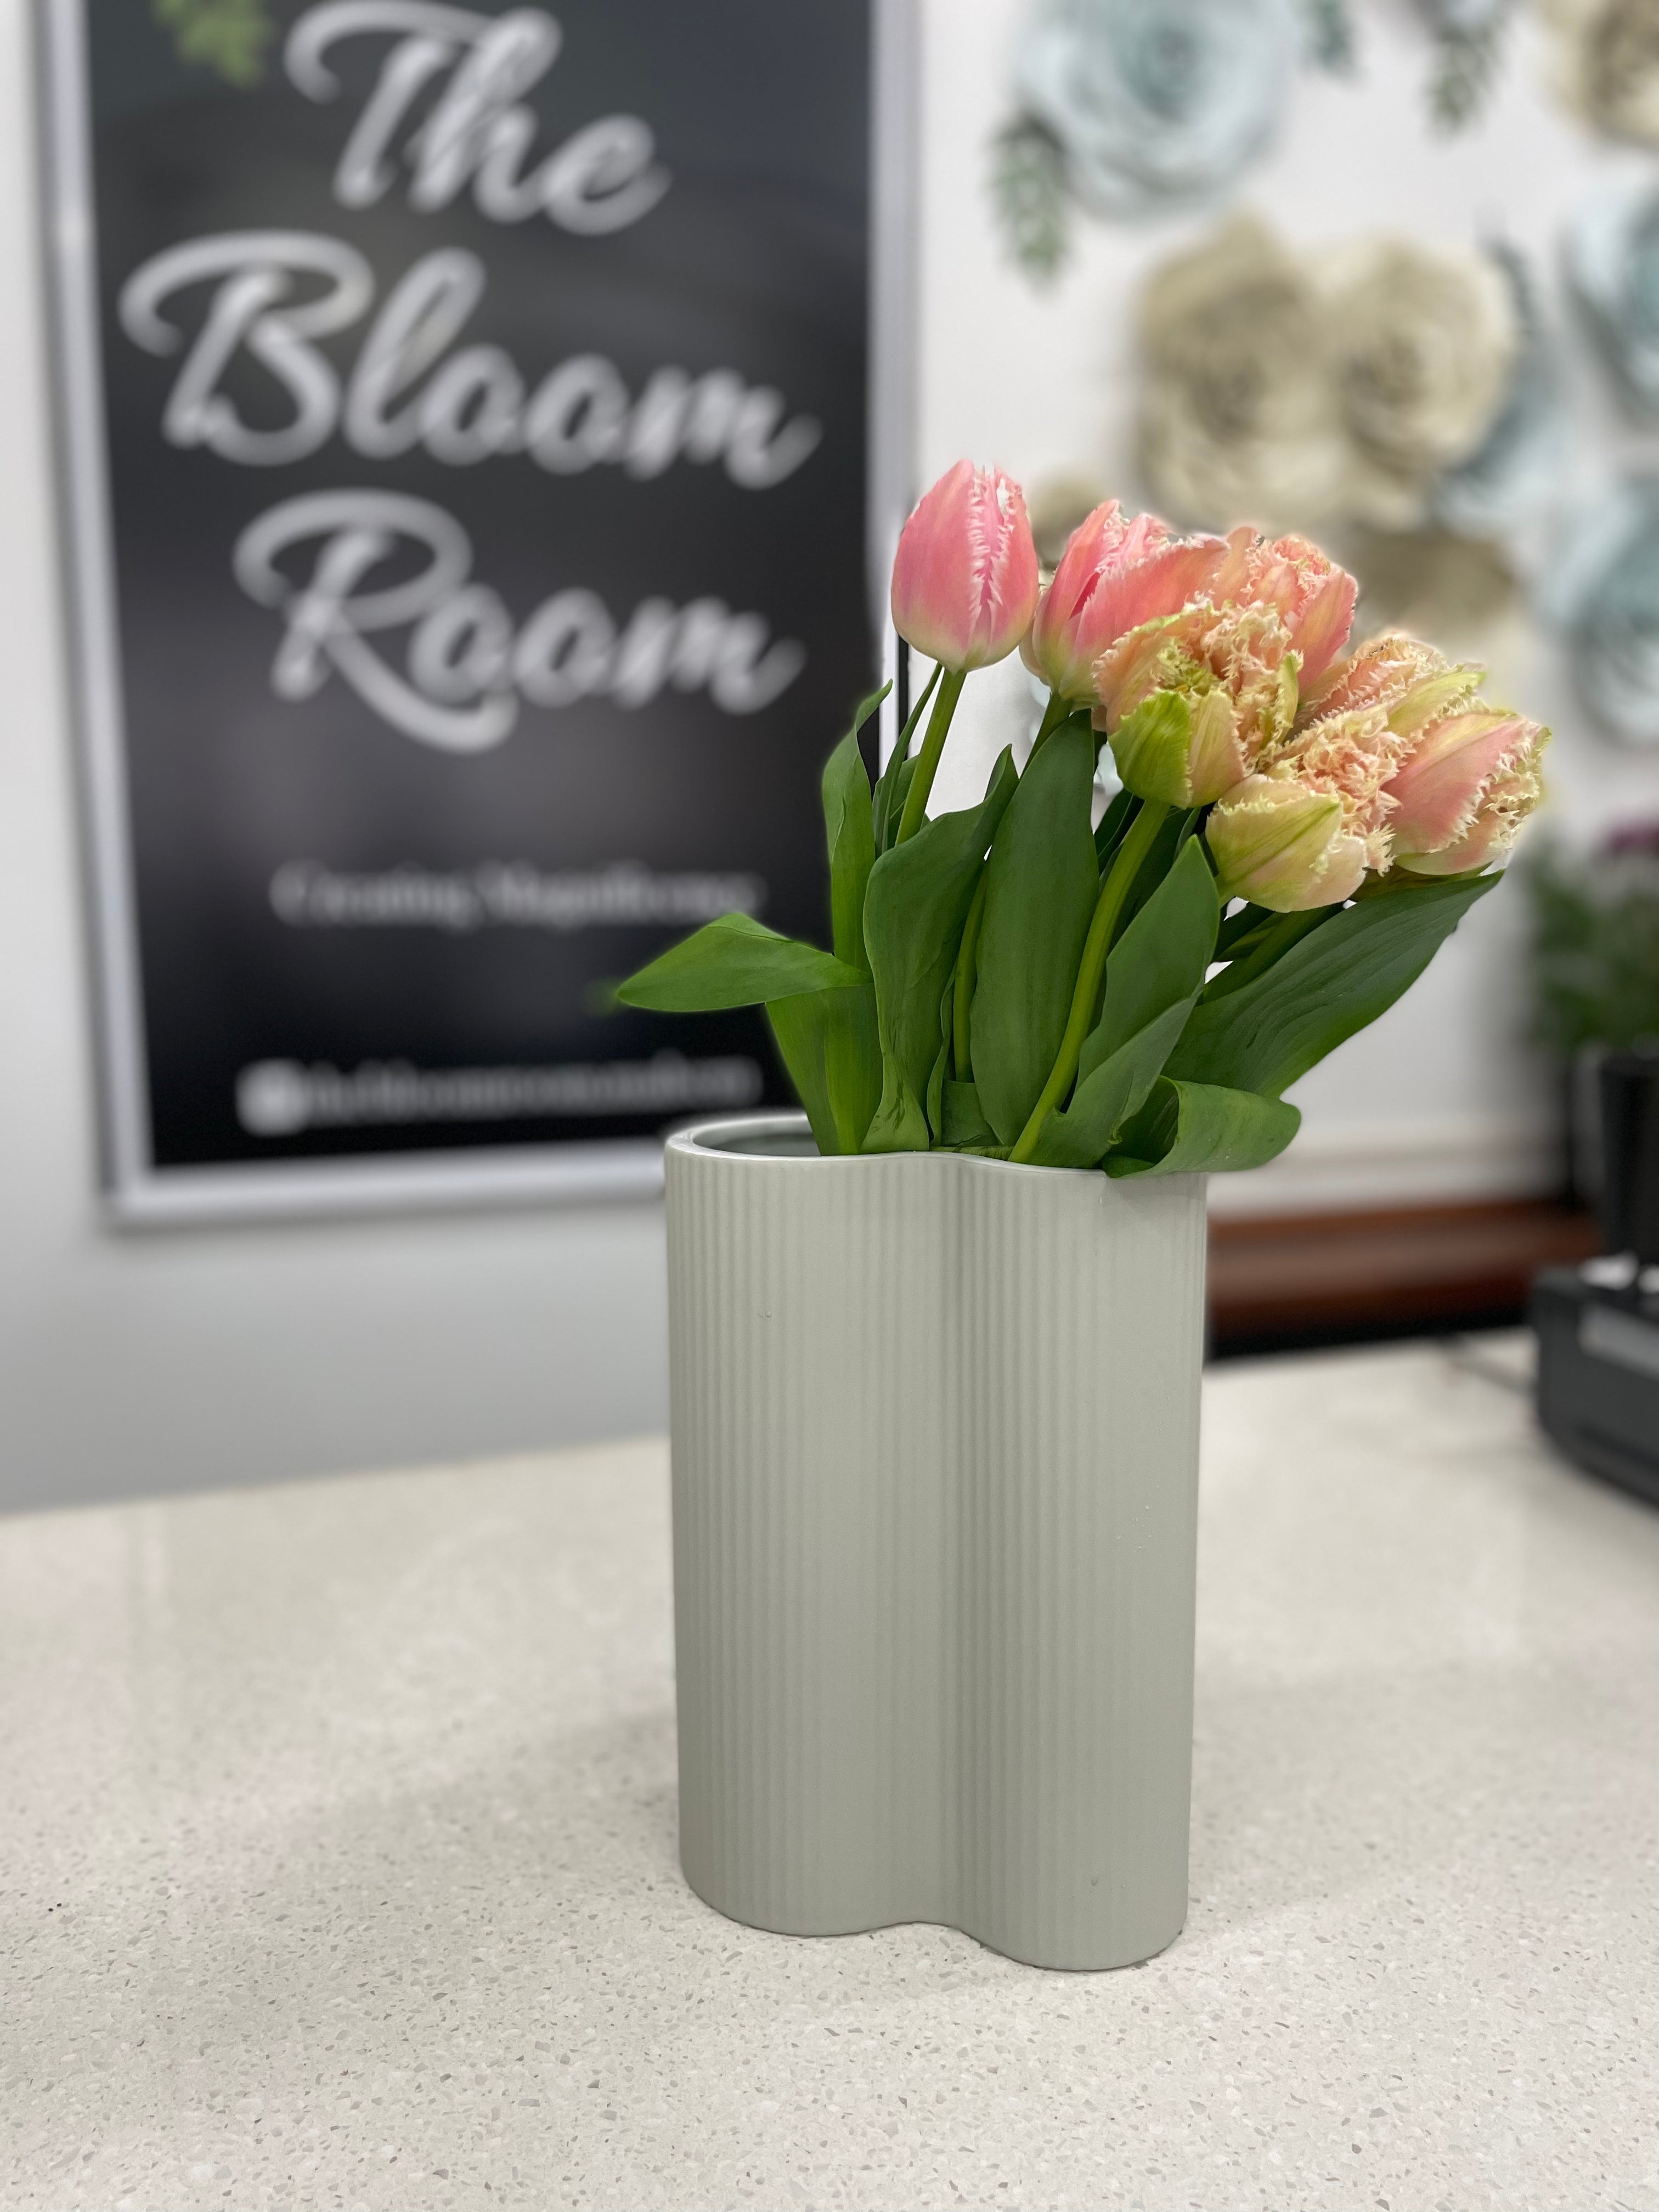 Waves Vase - The Bloom Room 